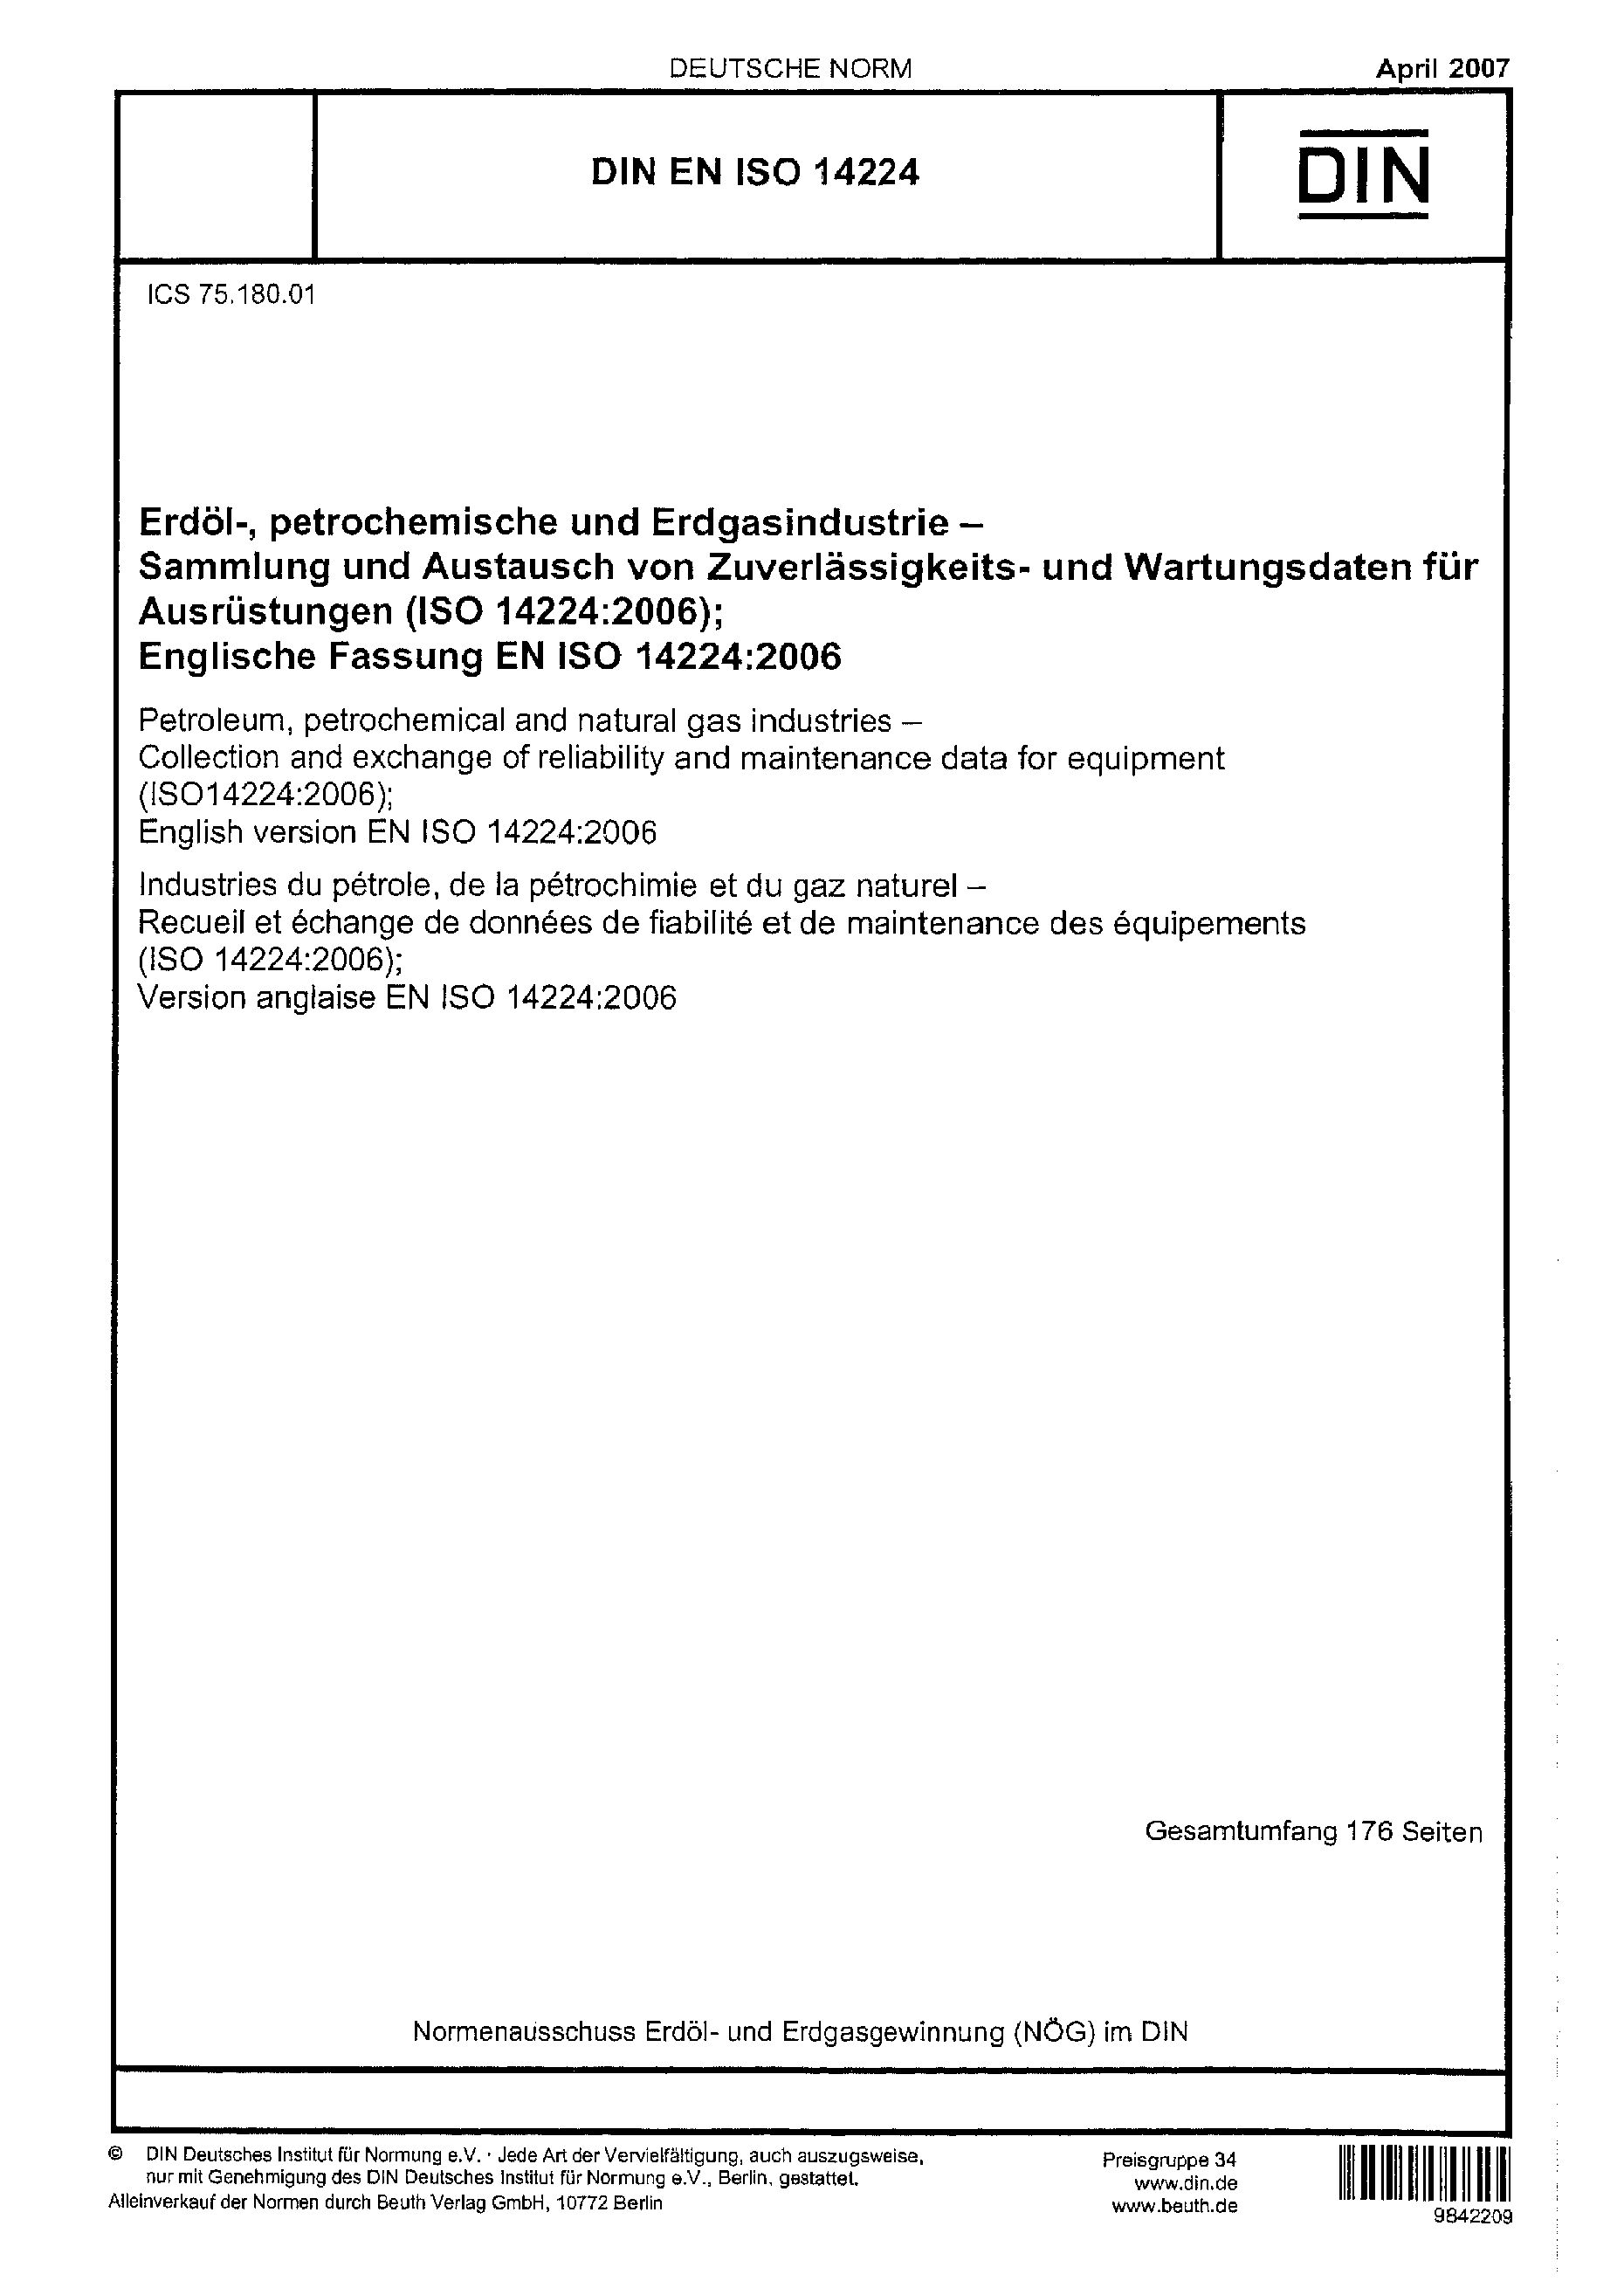 DIN EN ISO 14224-2007